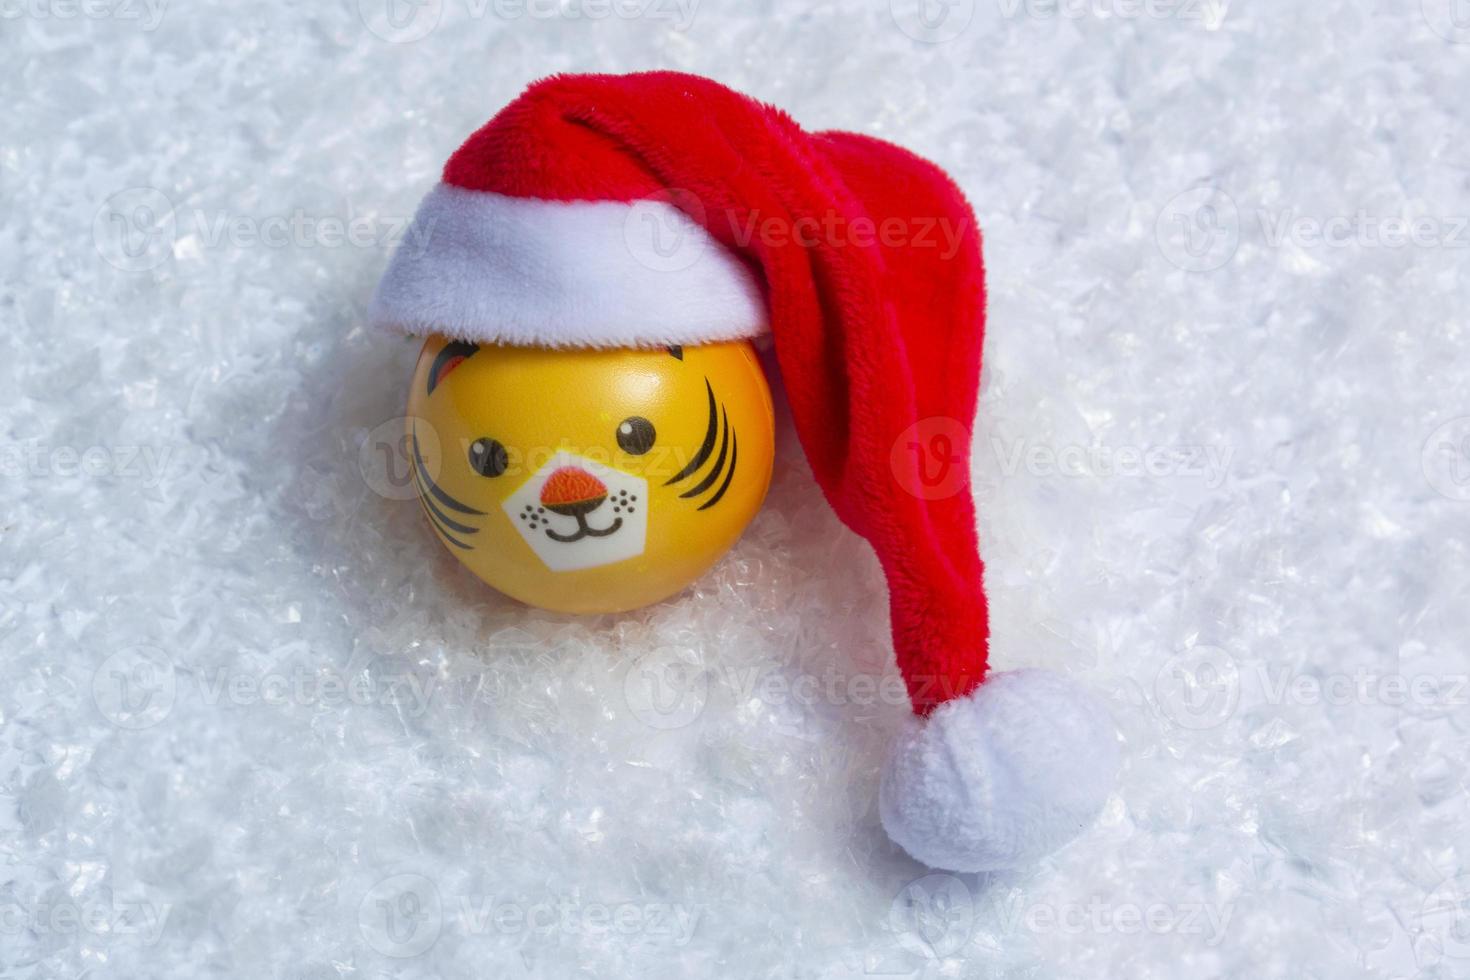 symbolen för det nya årets tiger i en tomtehatt i snön på en bakgrund av bokeh-ljus. nytt år koncept foto